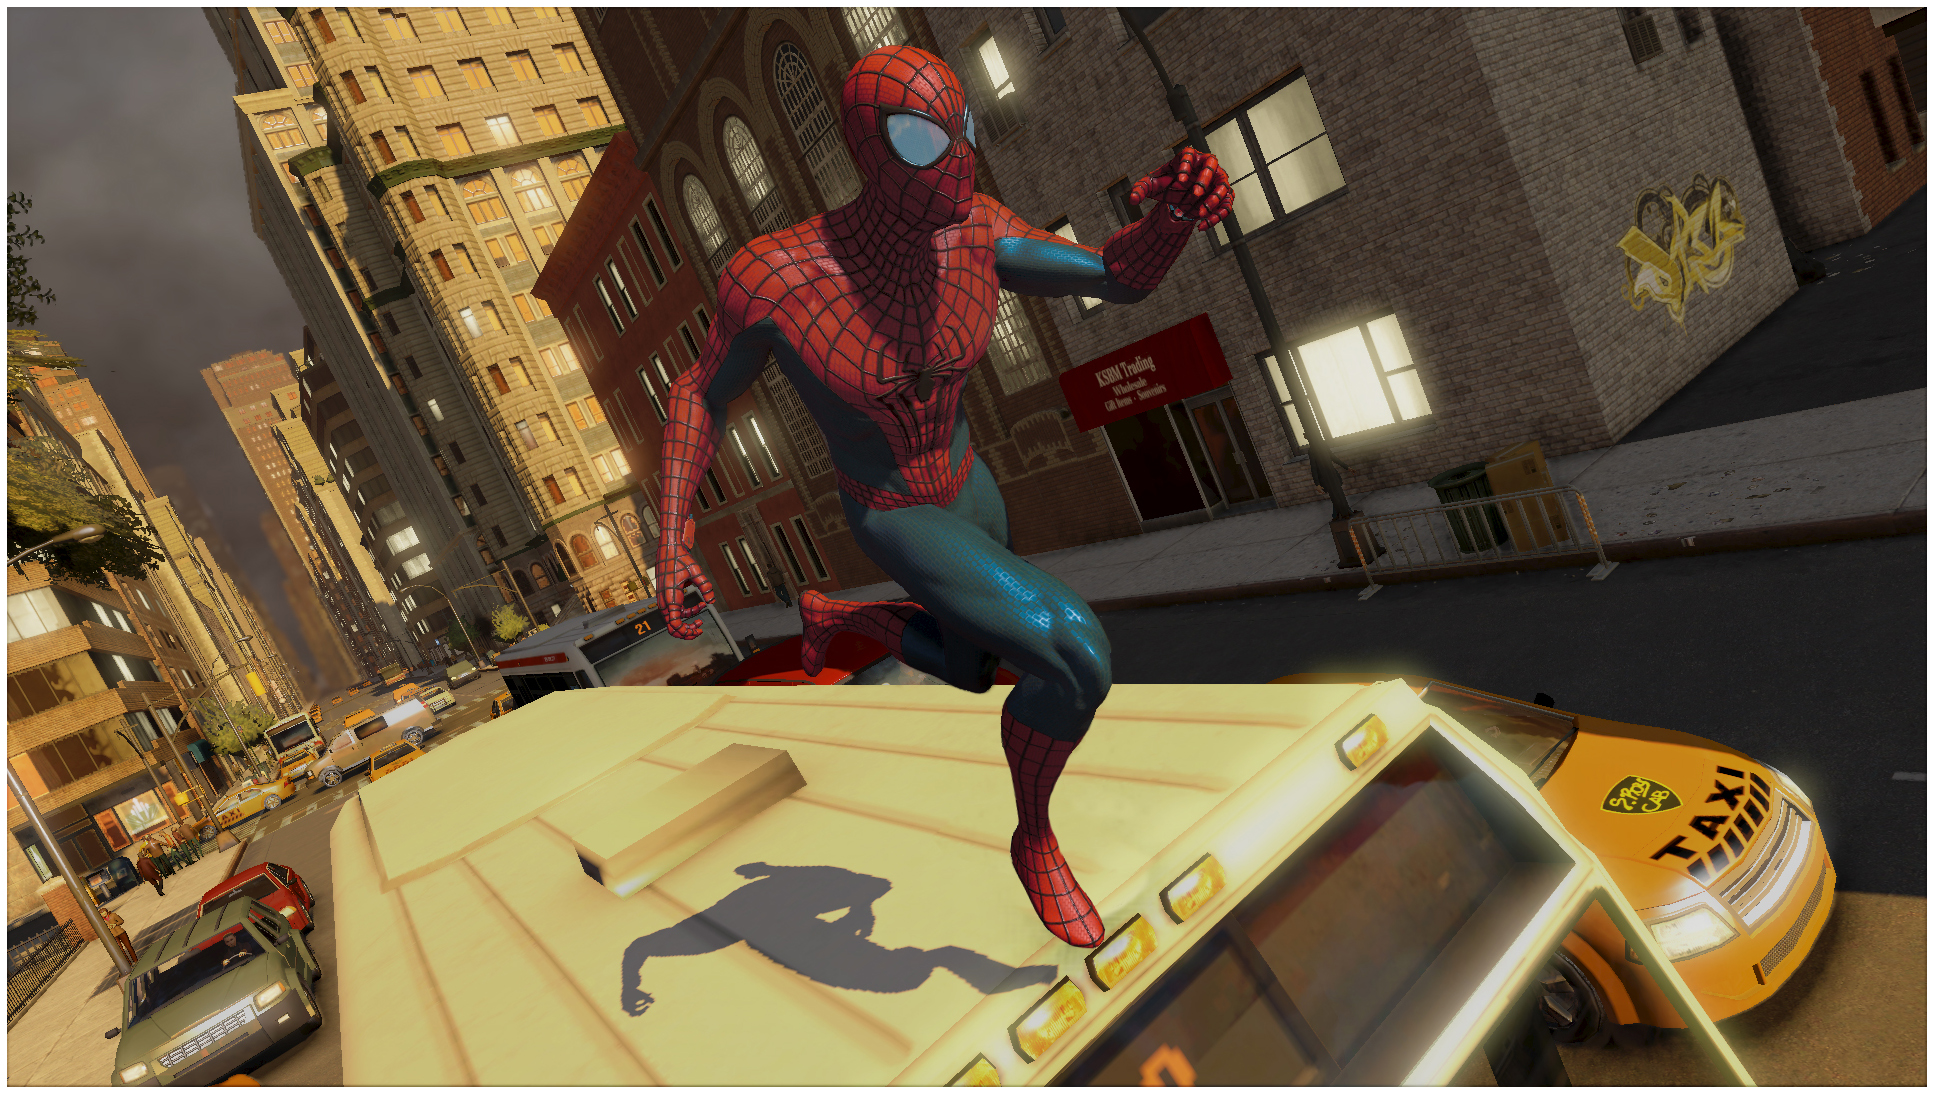 Игры человек паук на телефоне бесплатные. The amazing Spider-man 2 игра. Амазинг Спайдермен 2 игра. The amazing Spider-man (игра, 2012). Человек паук 2 игра 2014.